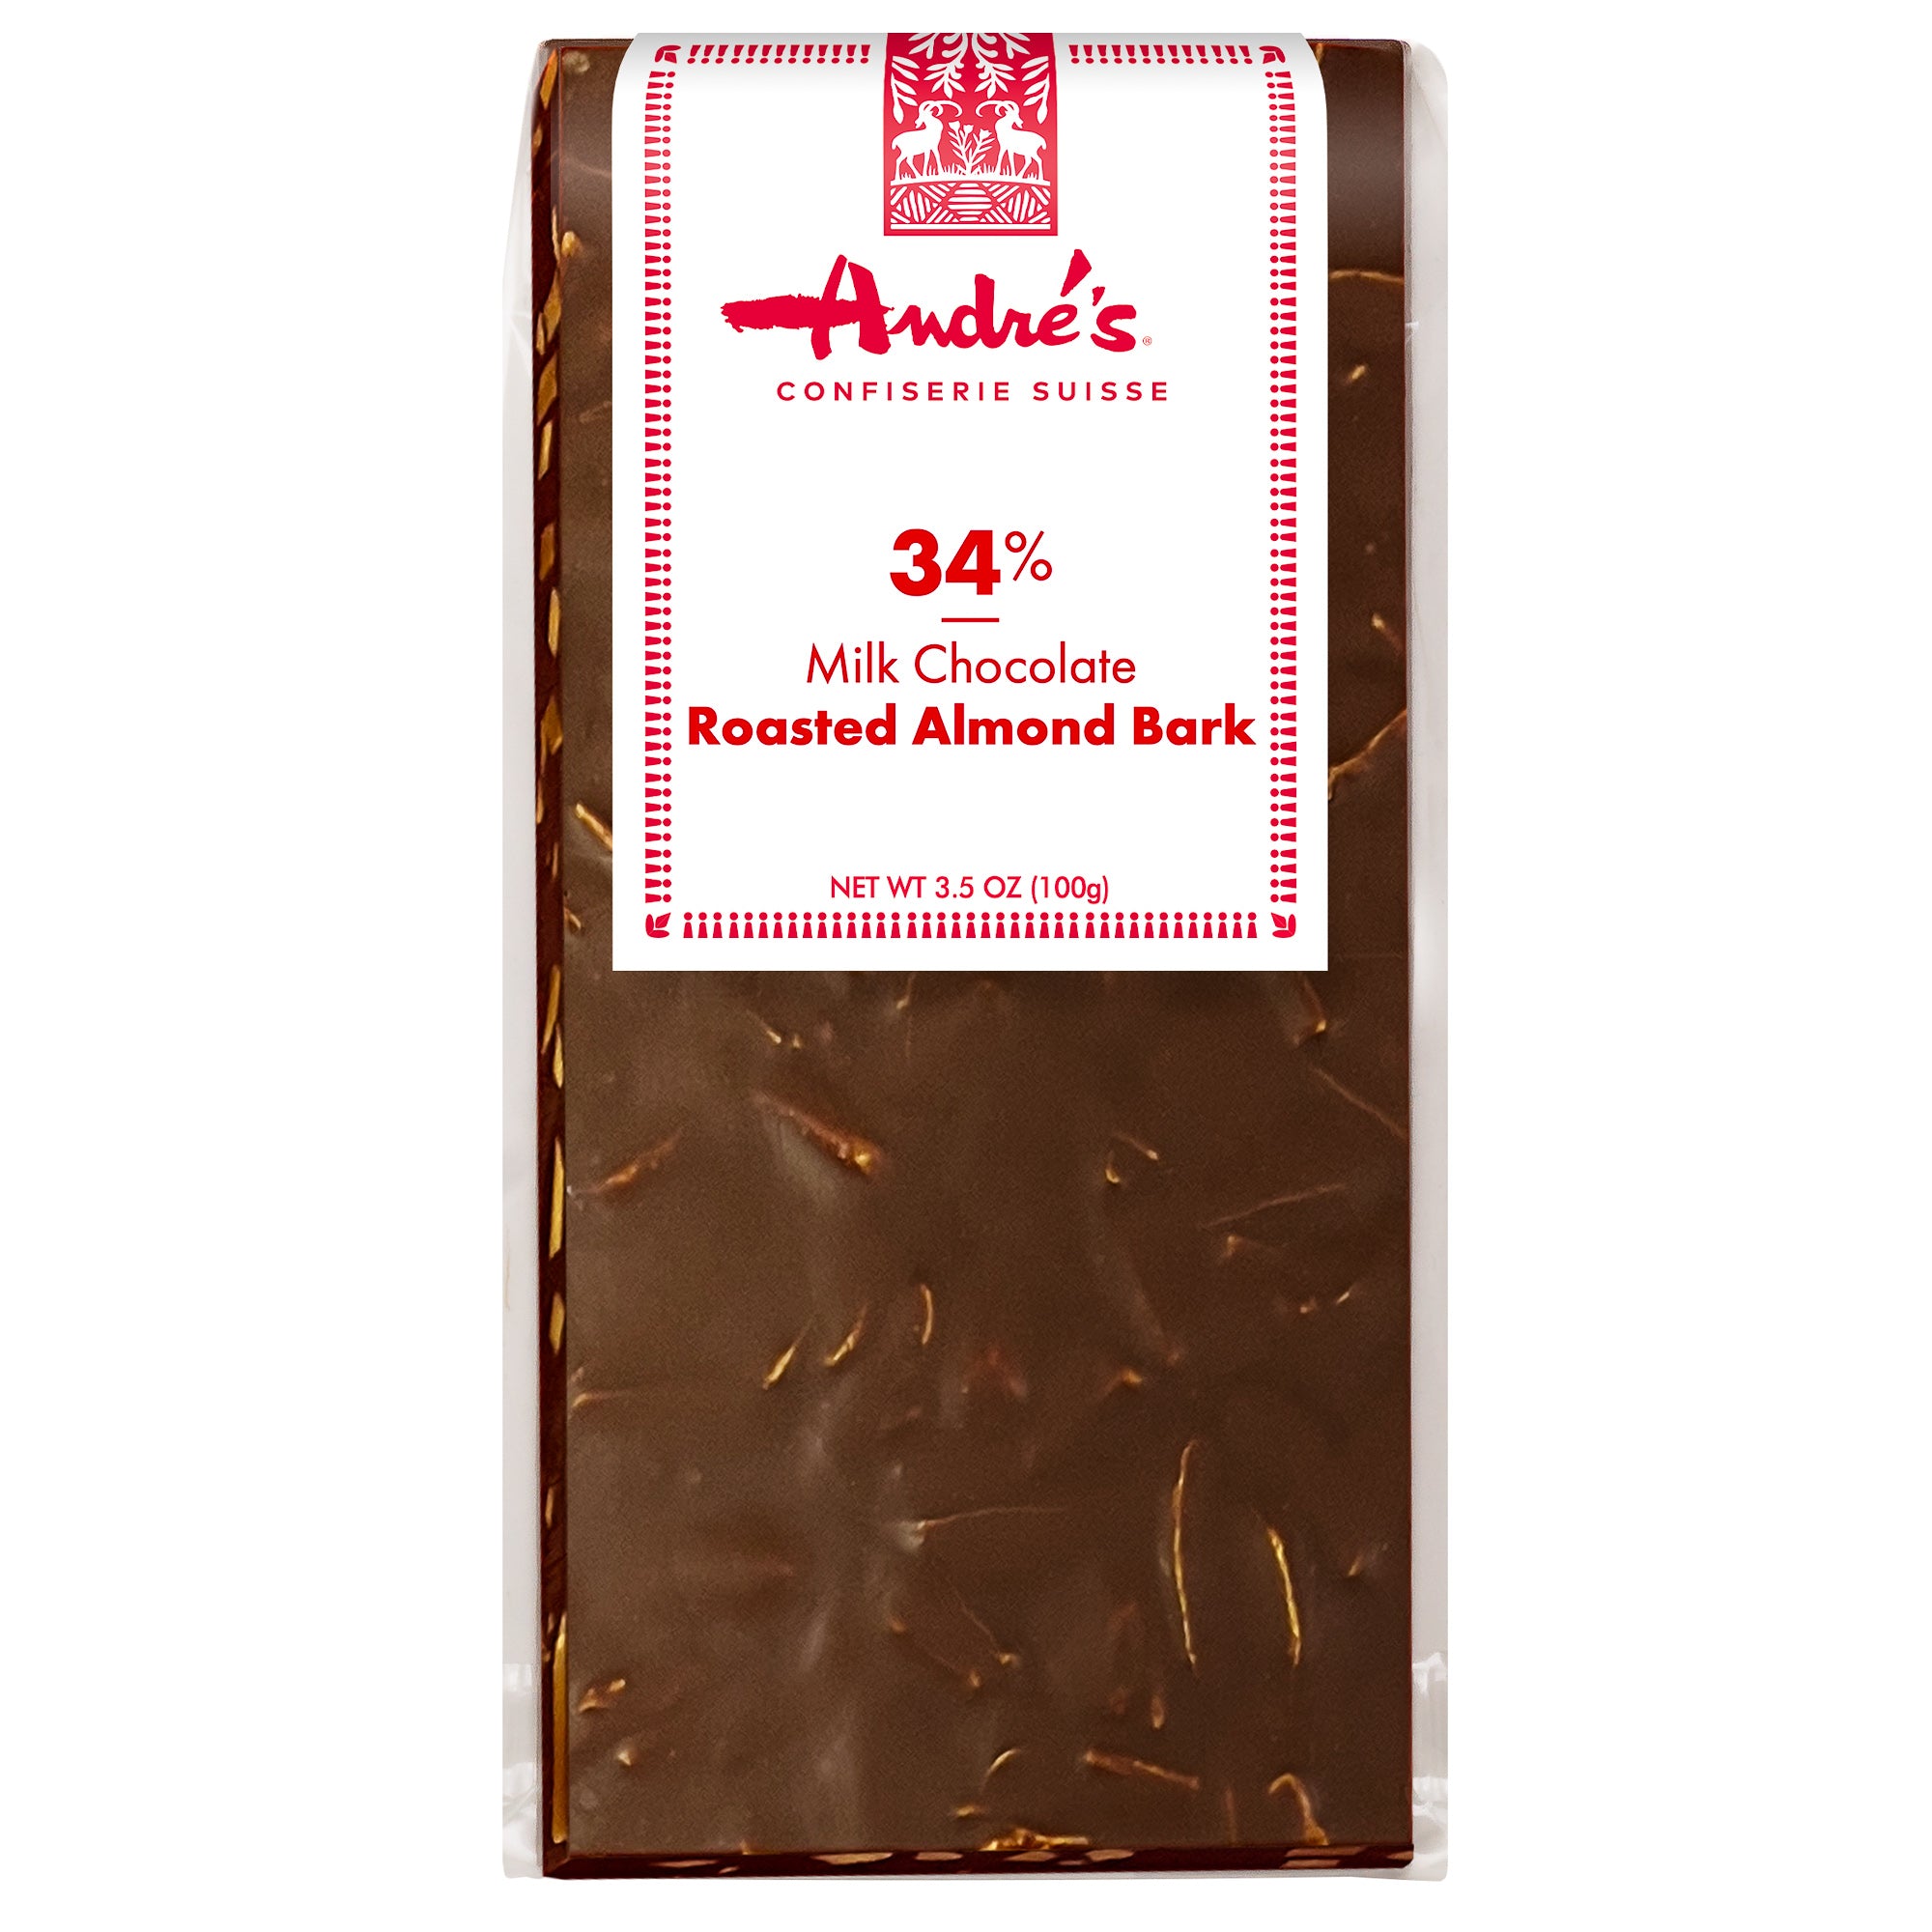 Milk Chocolate Roasted Almond Bark